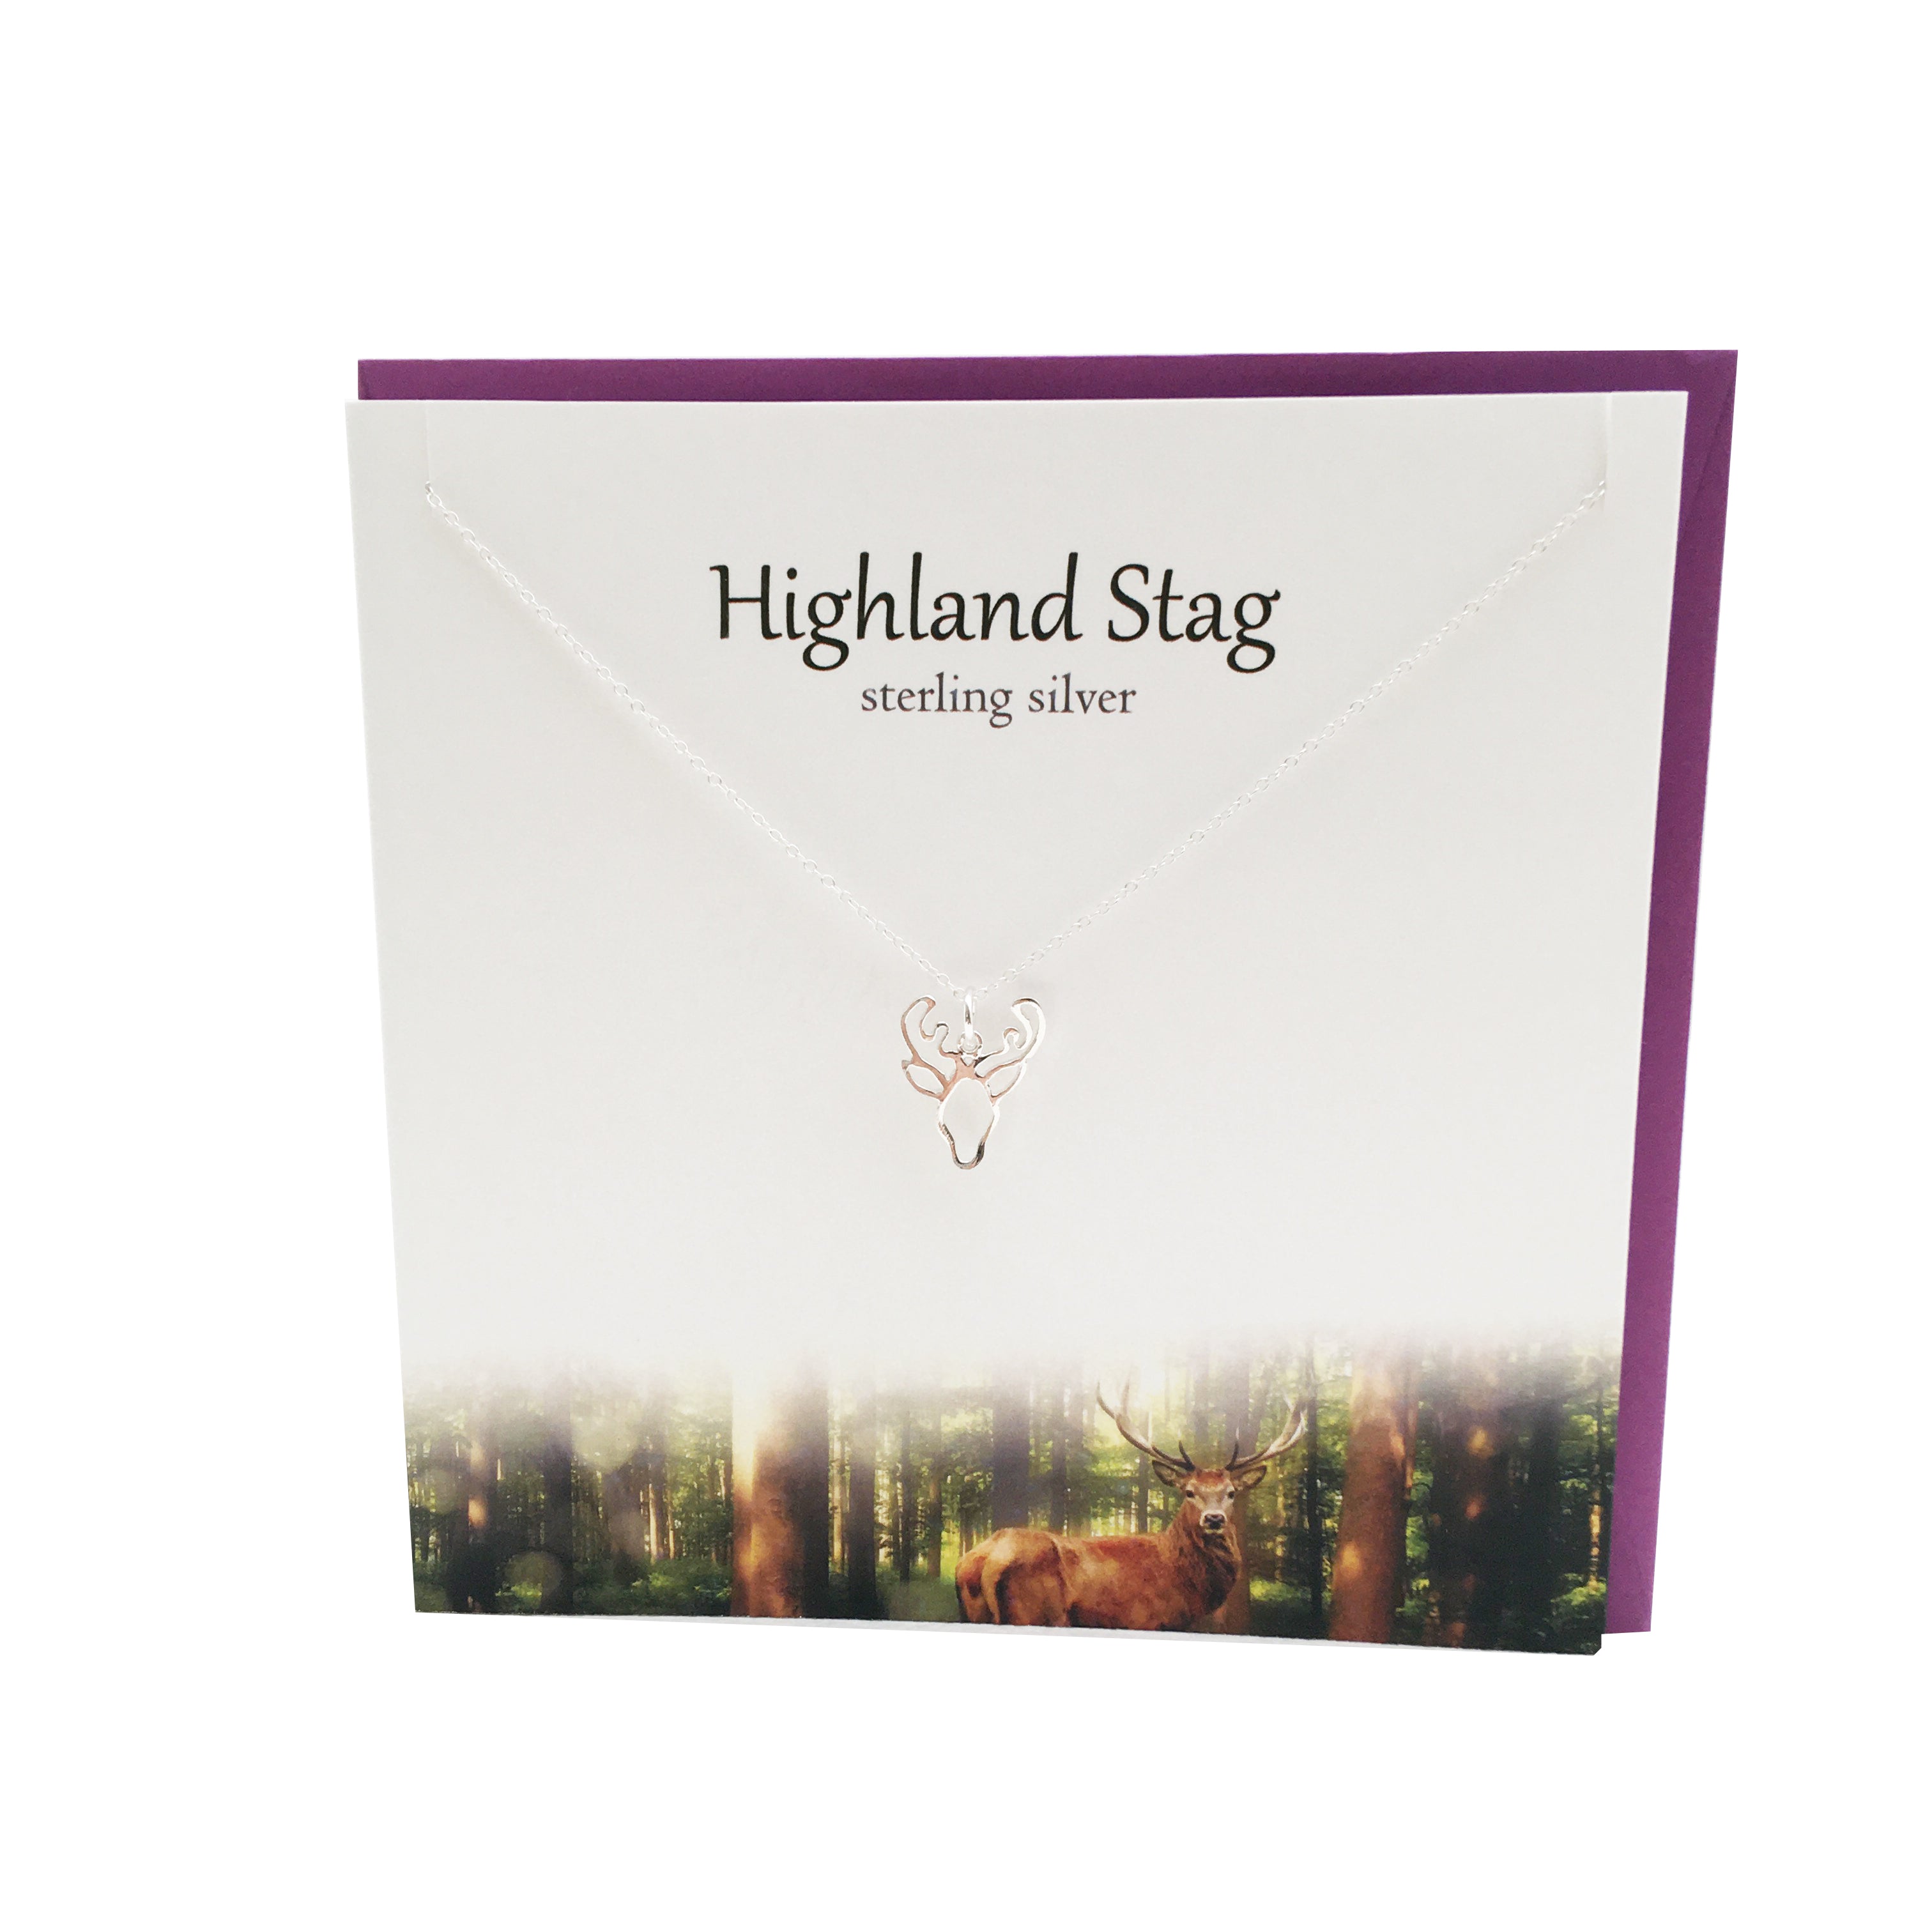 Highland Stag silver pendant | The Silver Studio Scotland